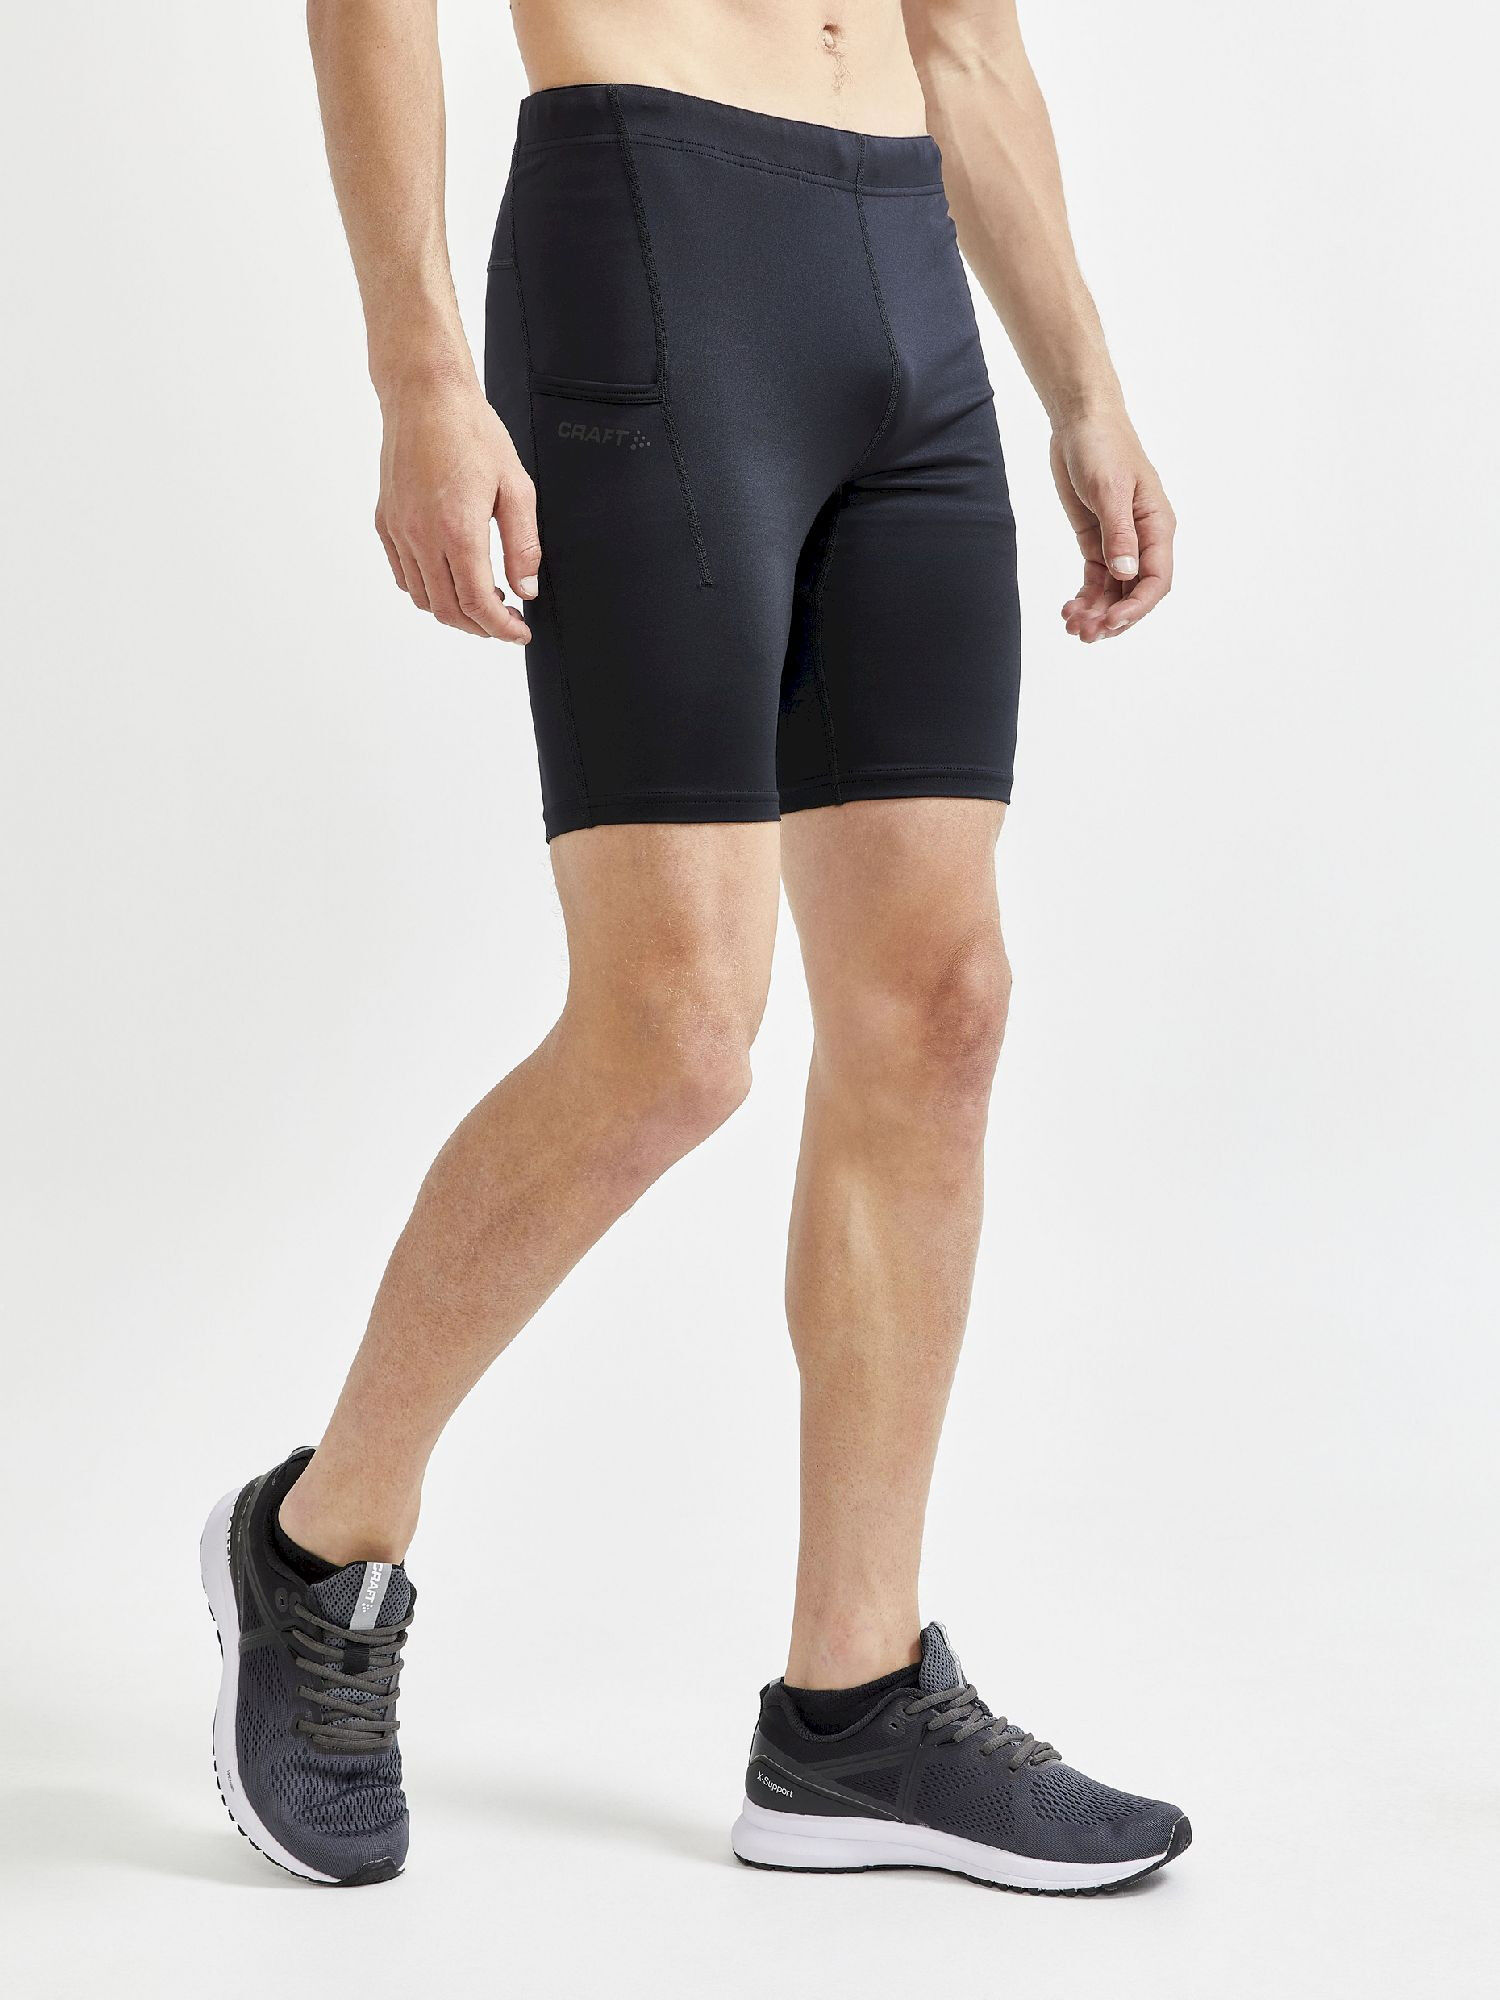 Craft ADV Essence Short Tights - Trail running shorts - Men's | Hardloop